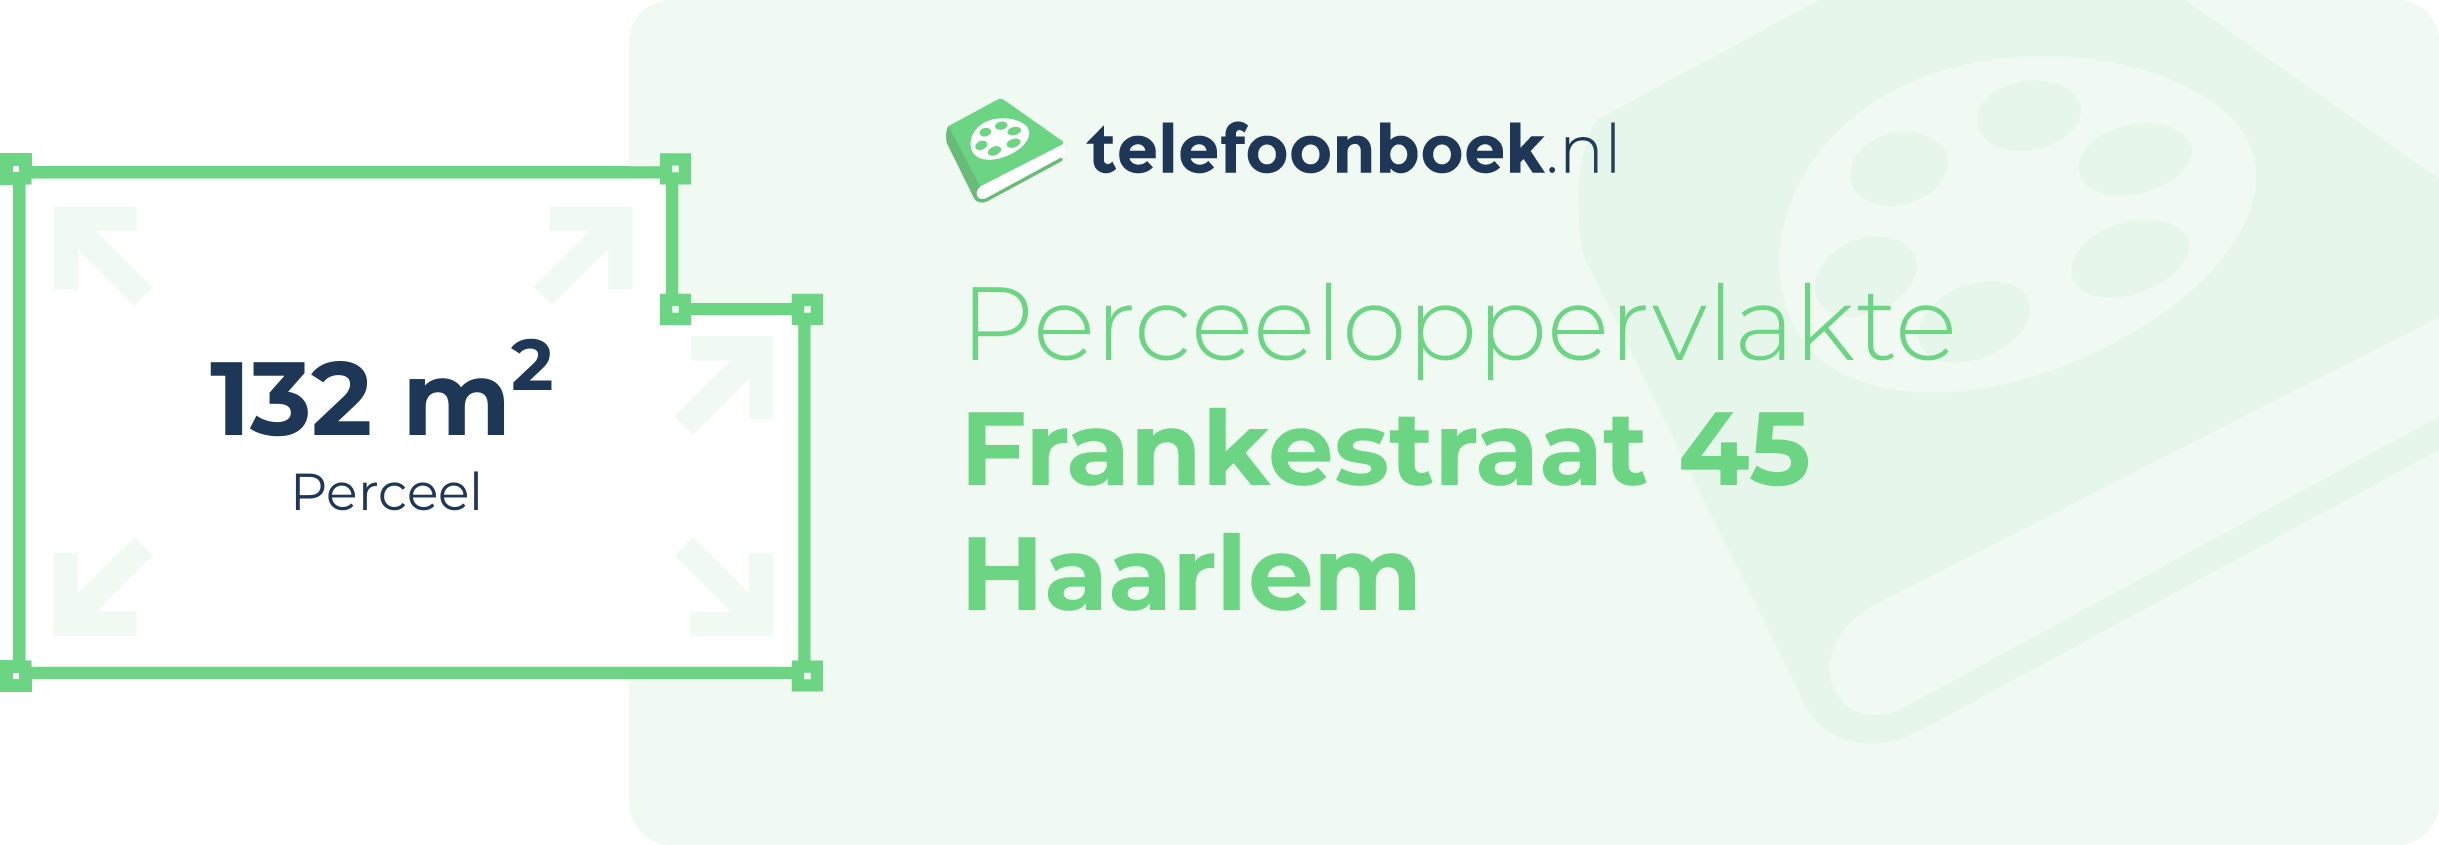 Perceeloppervlakte Frankestraat 45 Haarlem